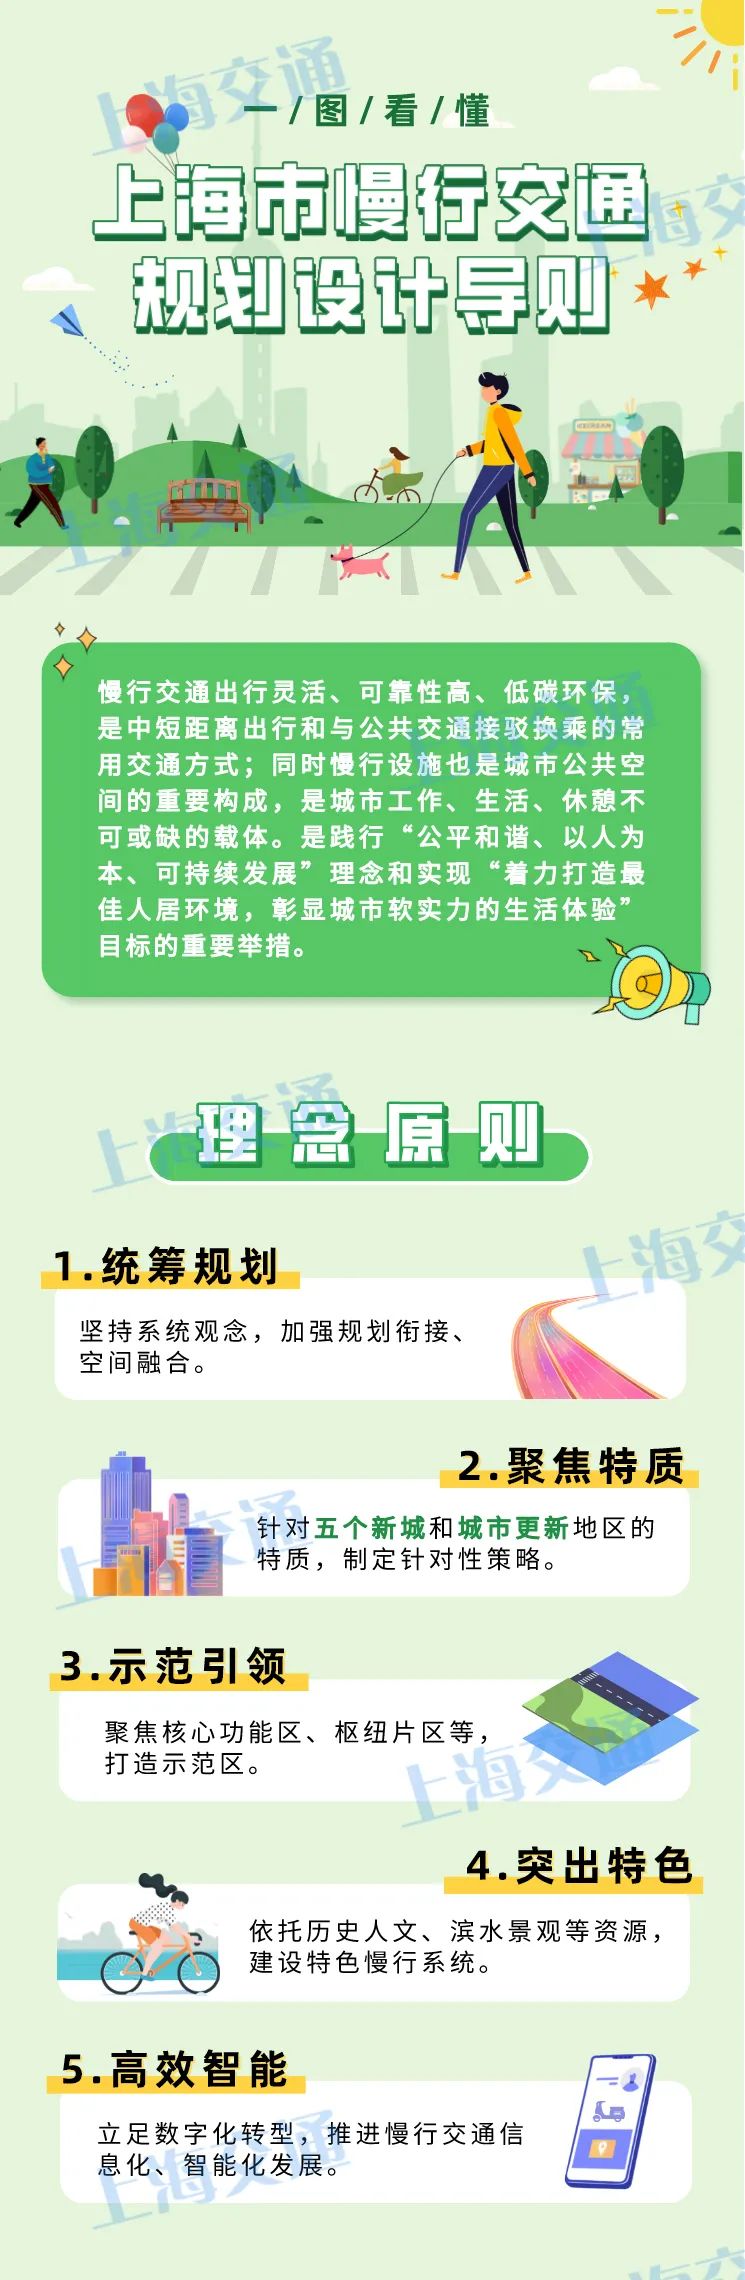 202108-上海市慢行交通规划设计导则